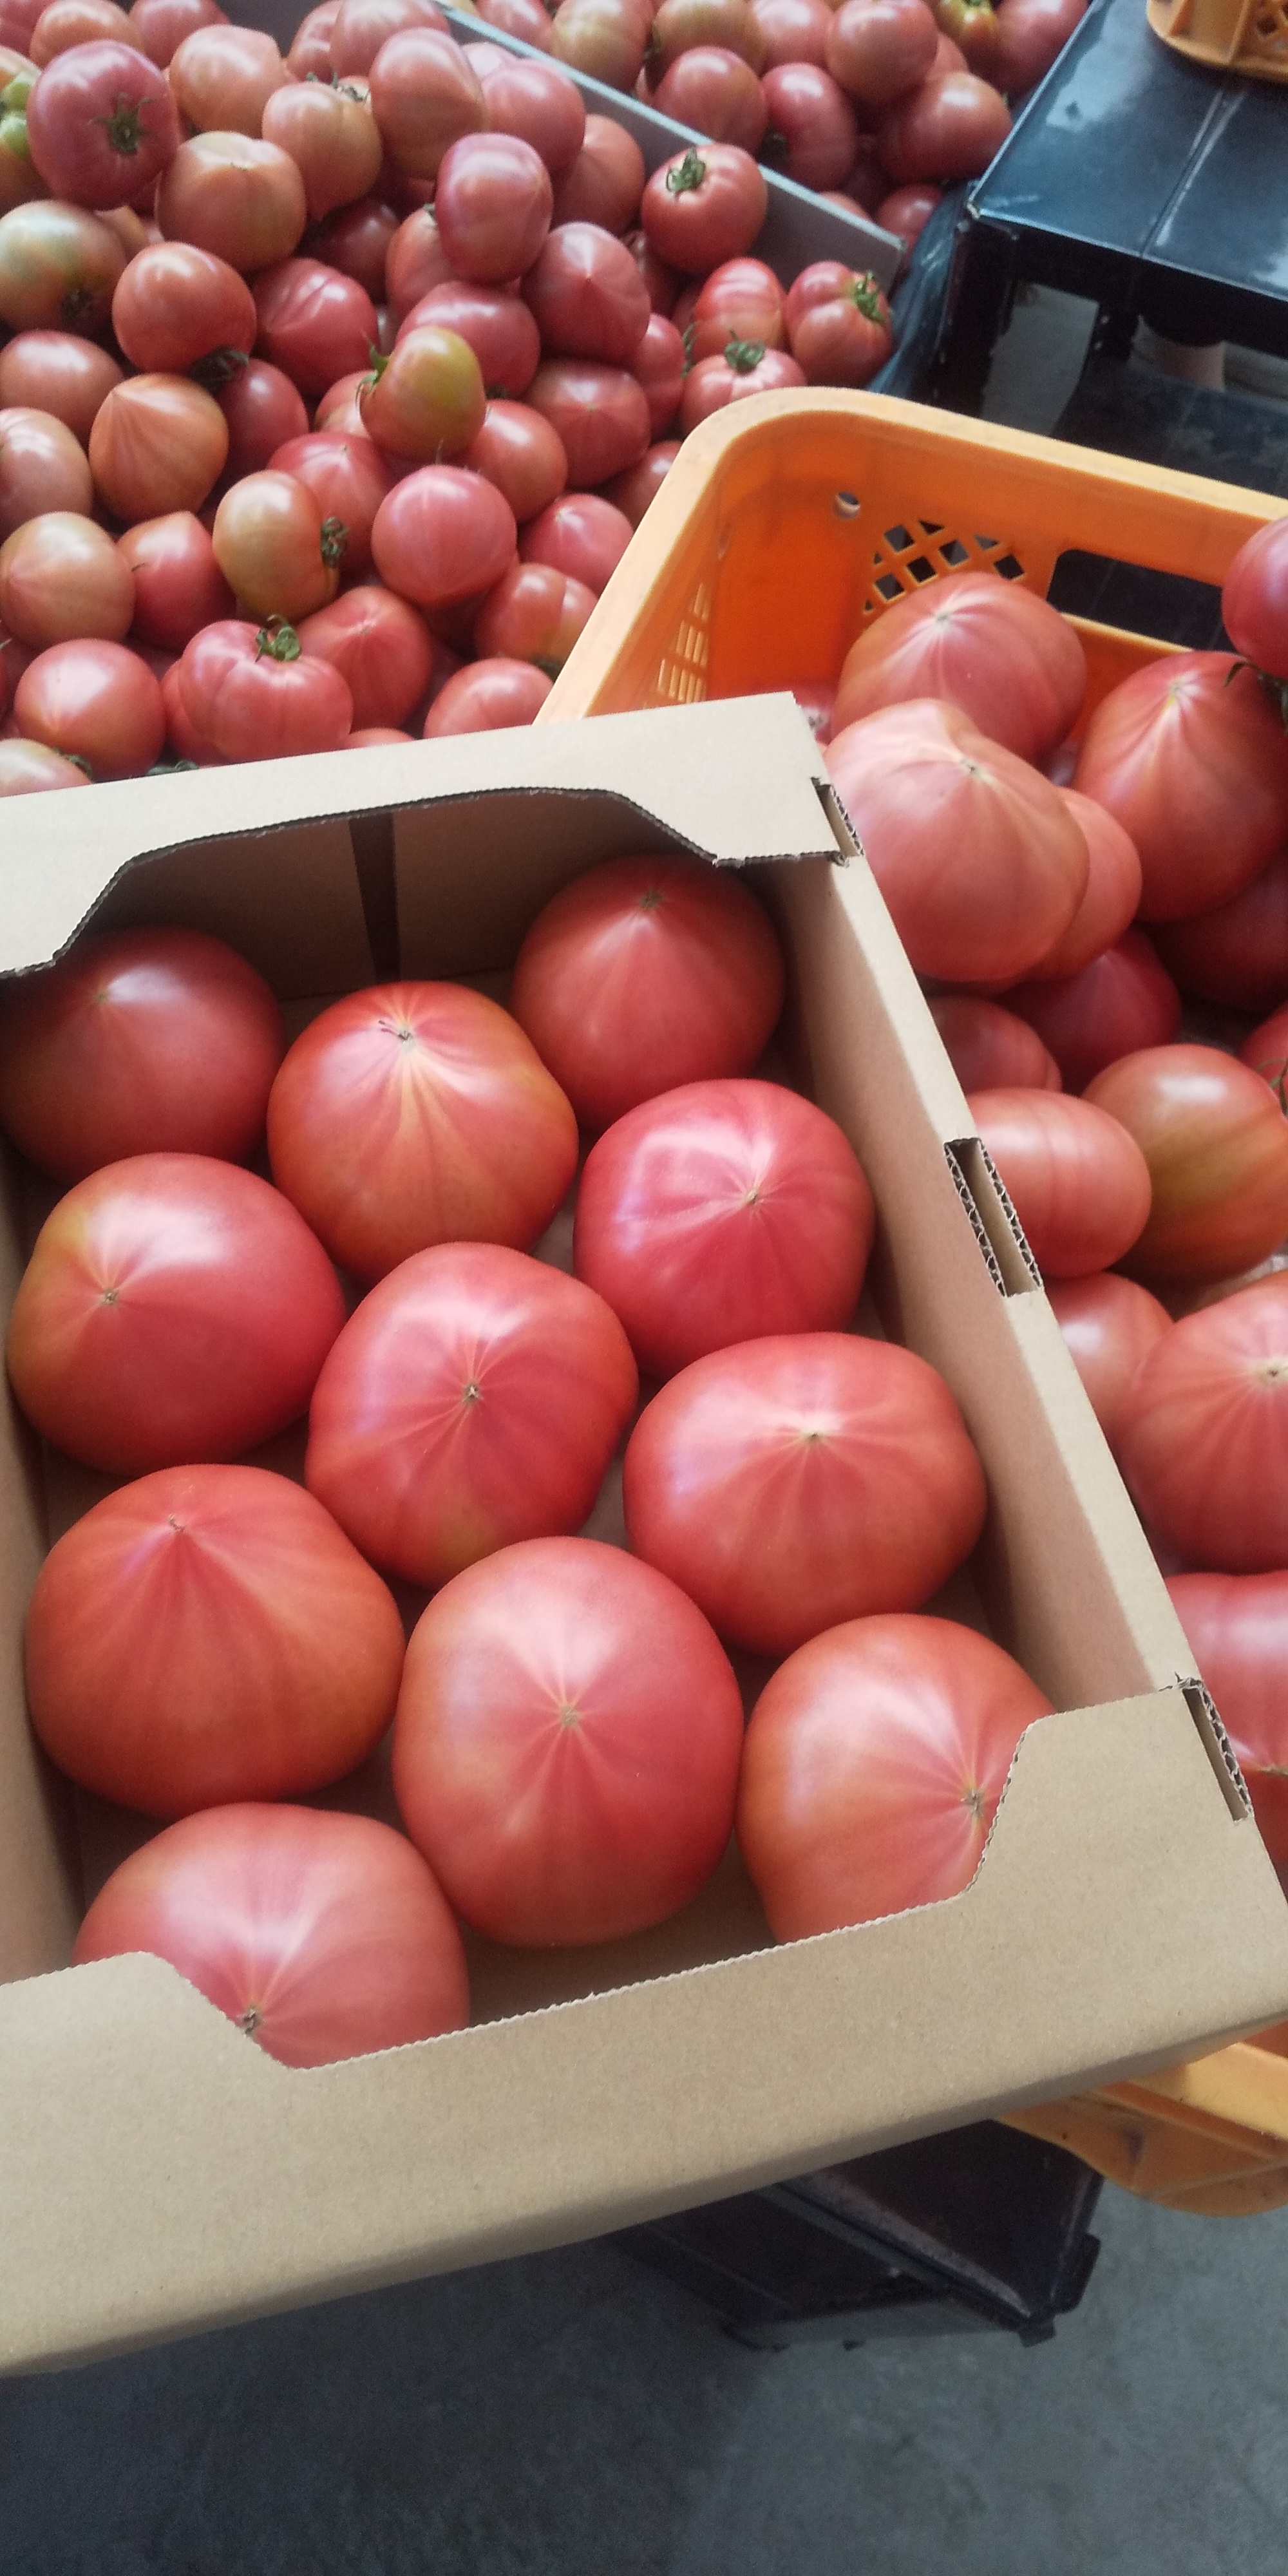 [100%純トマト]2キロ箱 桃太郎 桃太郎トマト2キロ箱